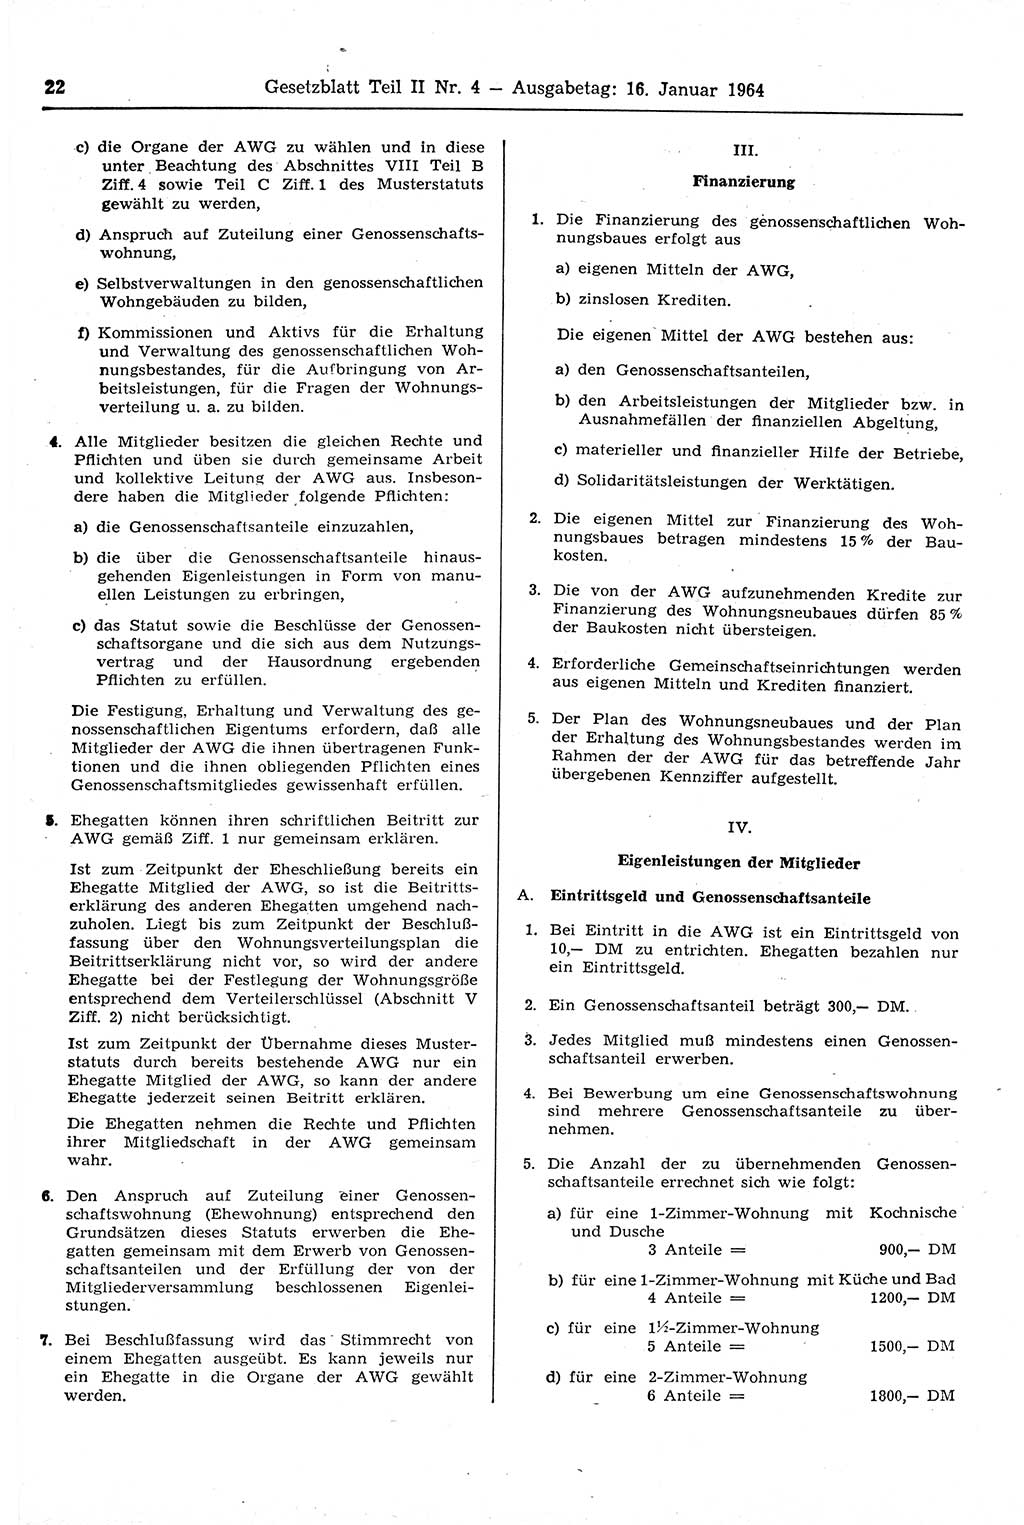 Gesetzblatt (GBl.) der Deutschen Demokratischen Republik (DDR) Teil ⅠⅠ 1964, Seite 22 (GBl. DDR ⅠⅠ 1964, S. 22)